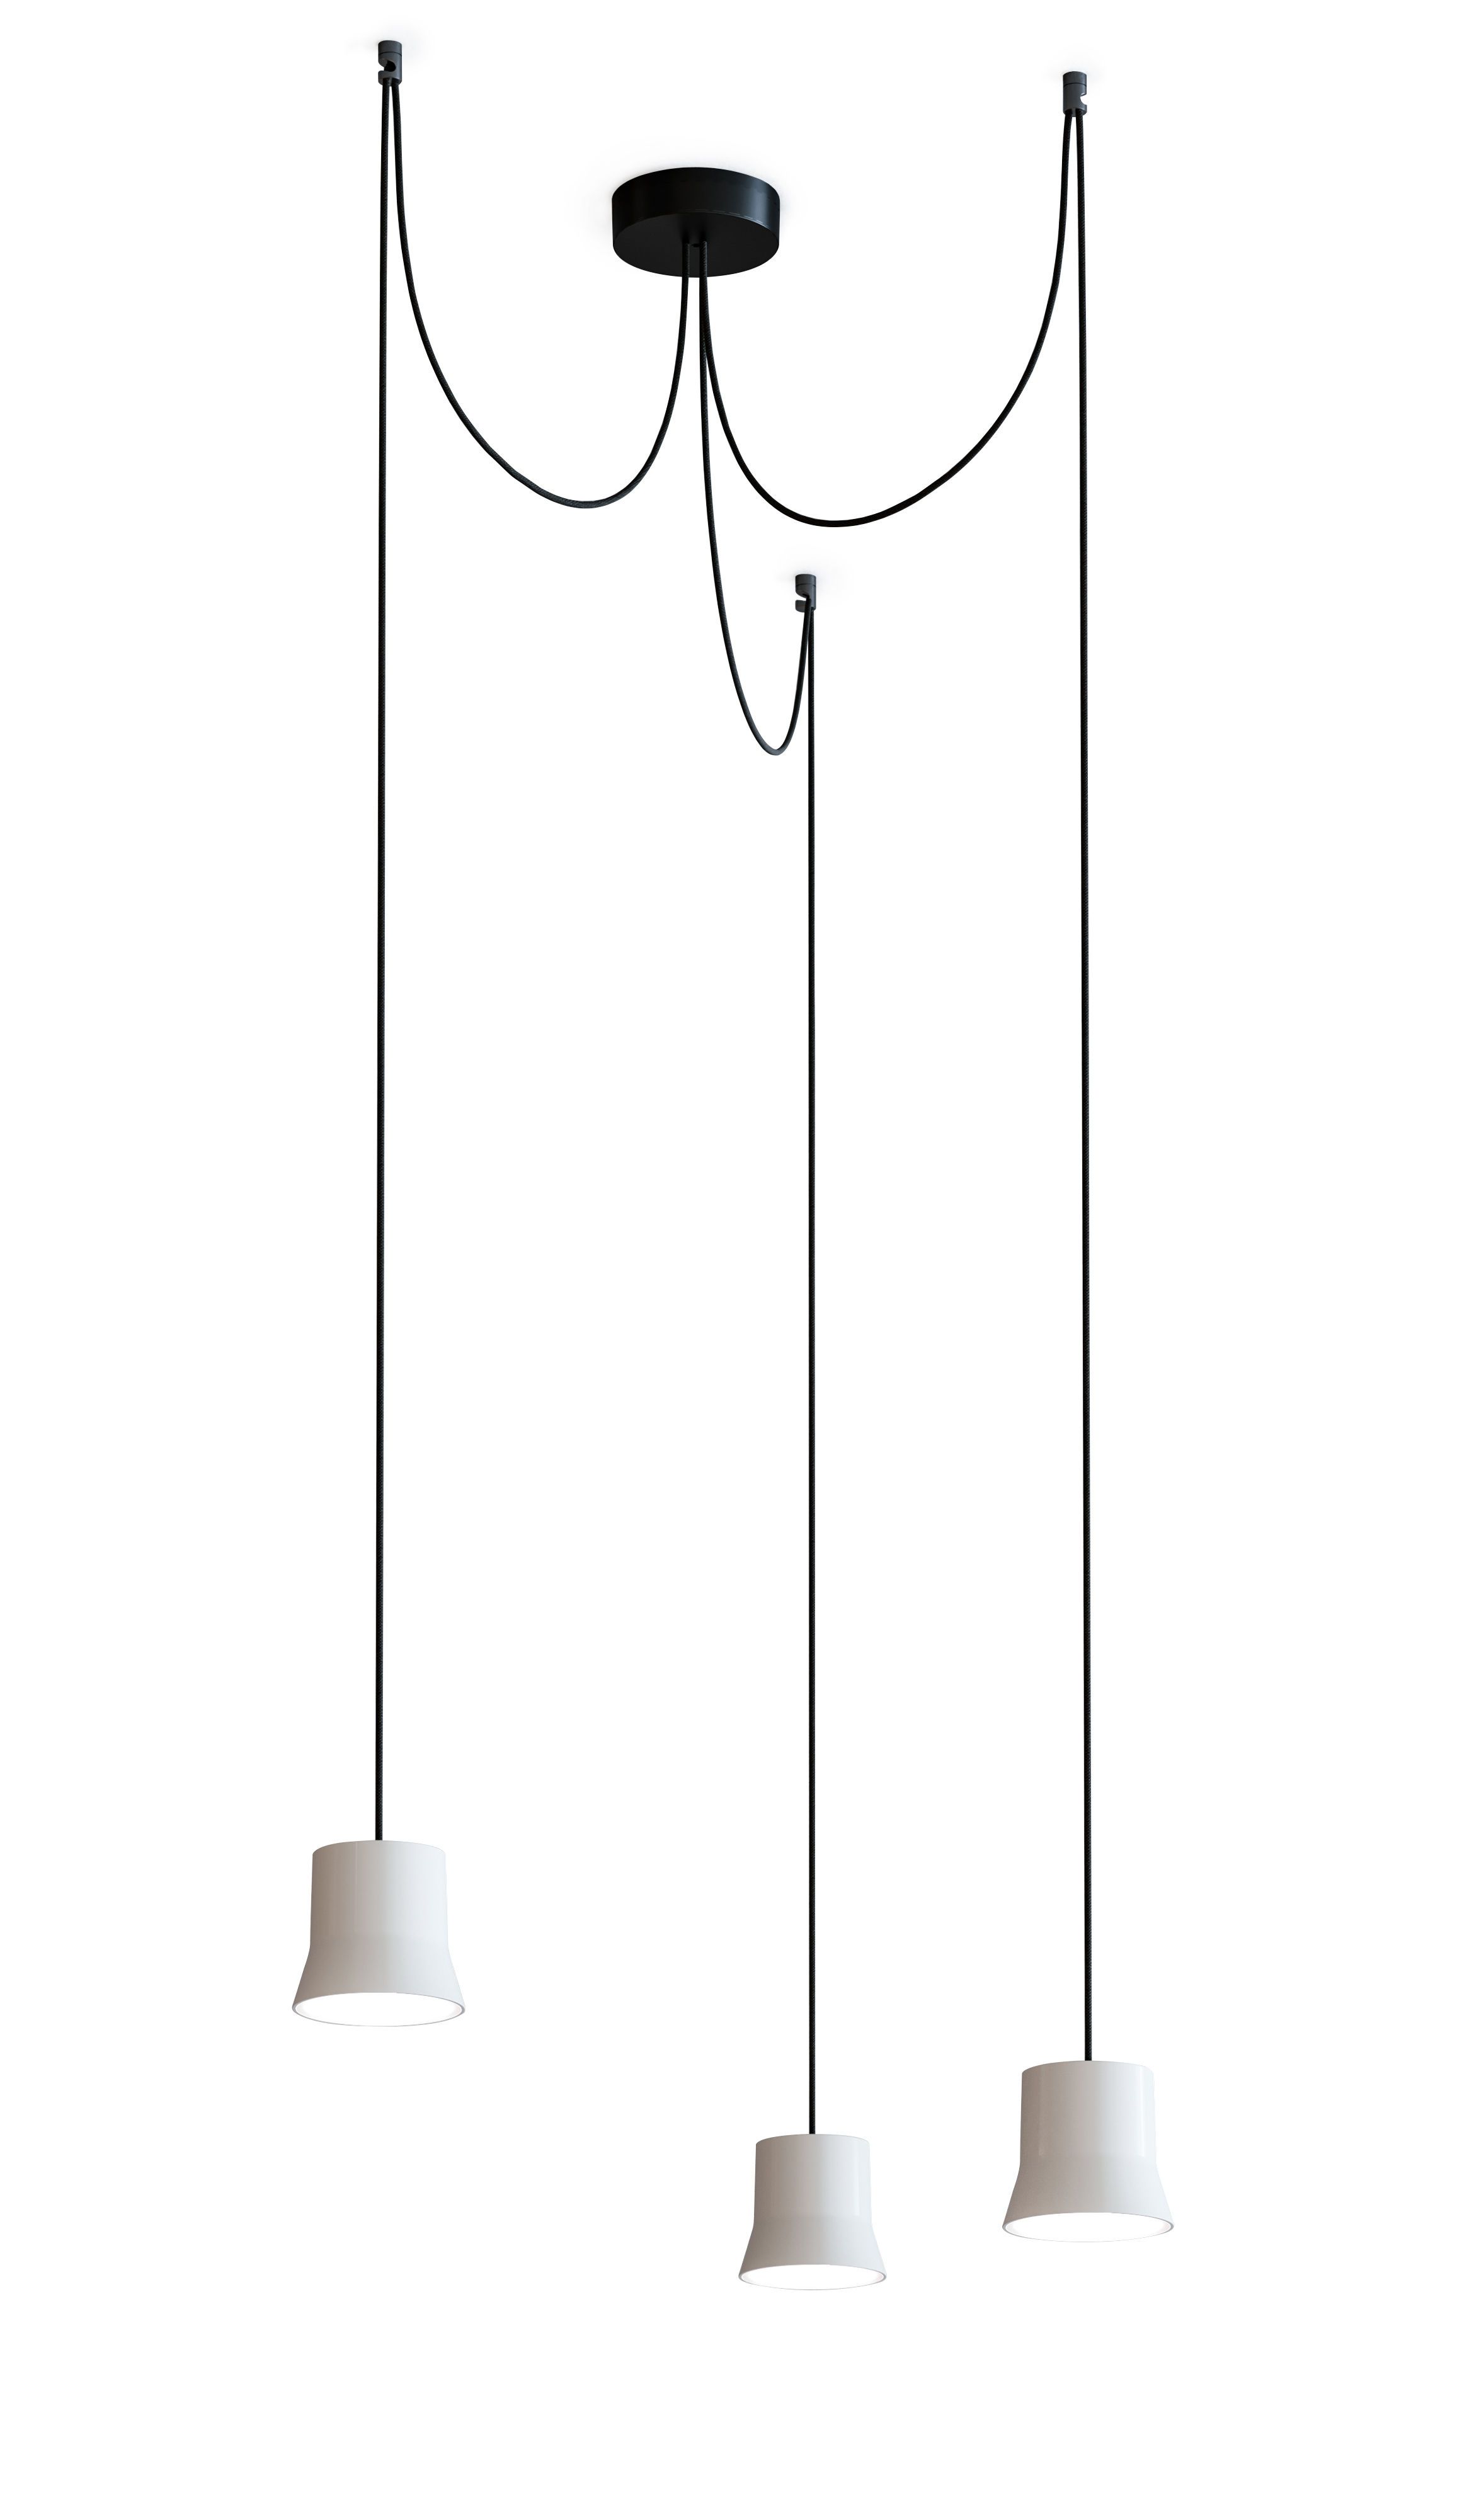 Подвесной светильник Gio by Artemide